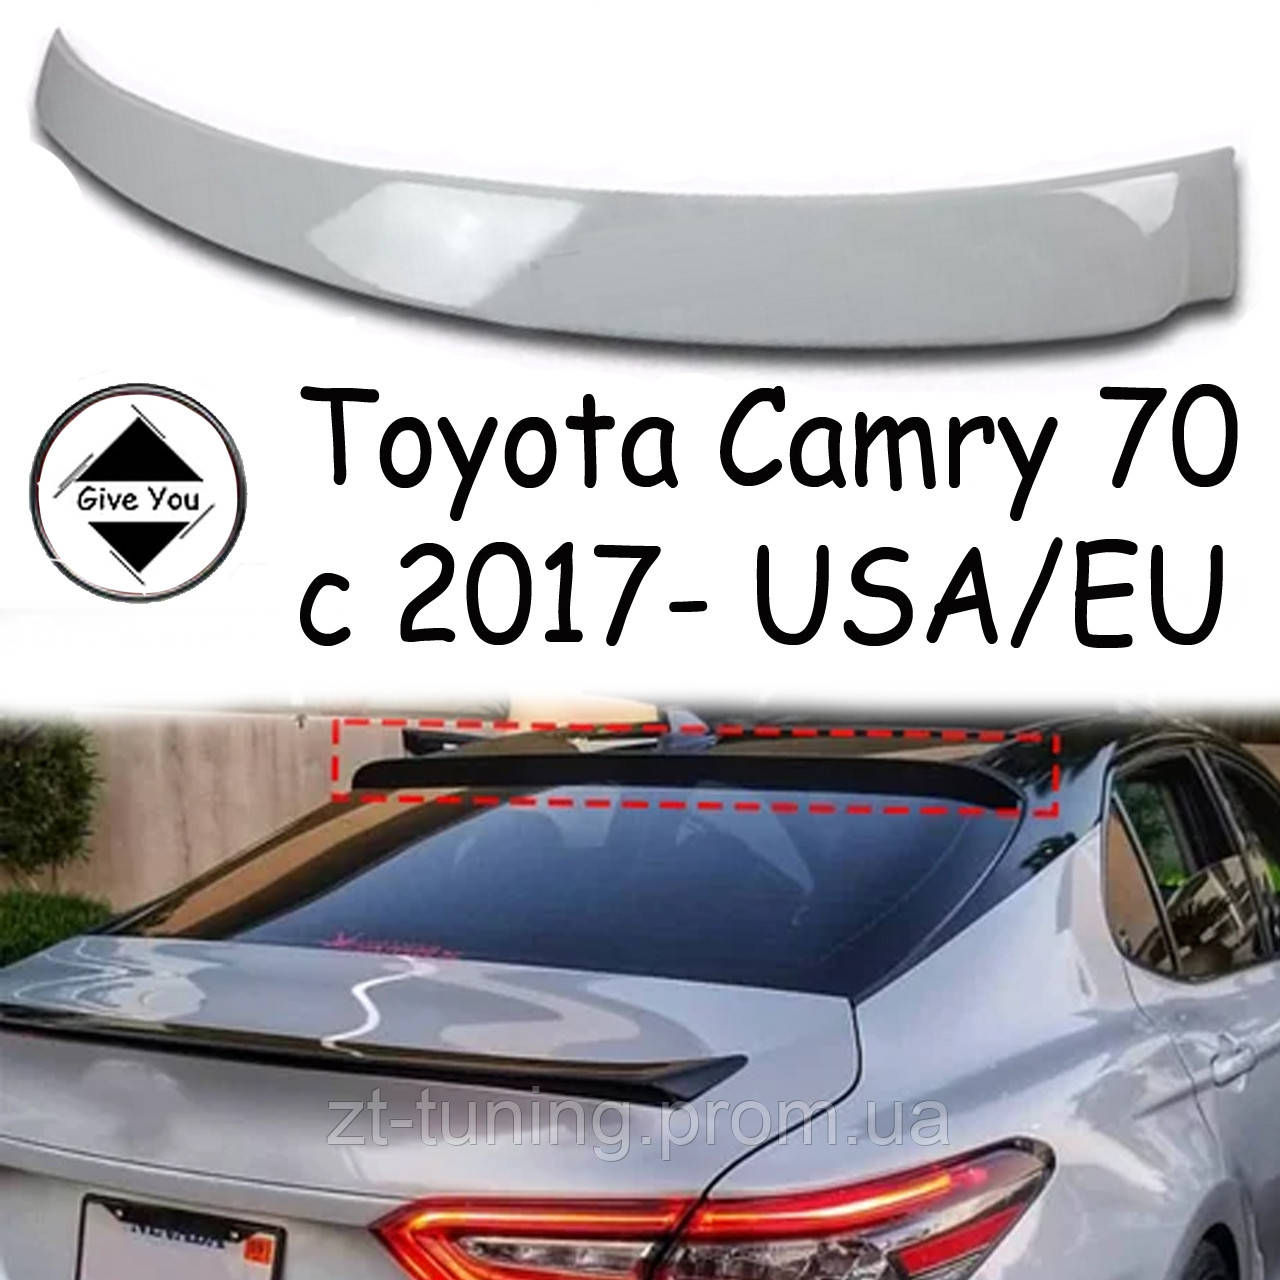 Козырек заднего стекла Toyota Camry 70 Тойота Камри 70 2017- USA и Европа Дефлектор заднего стекла стеклопласт